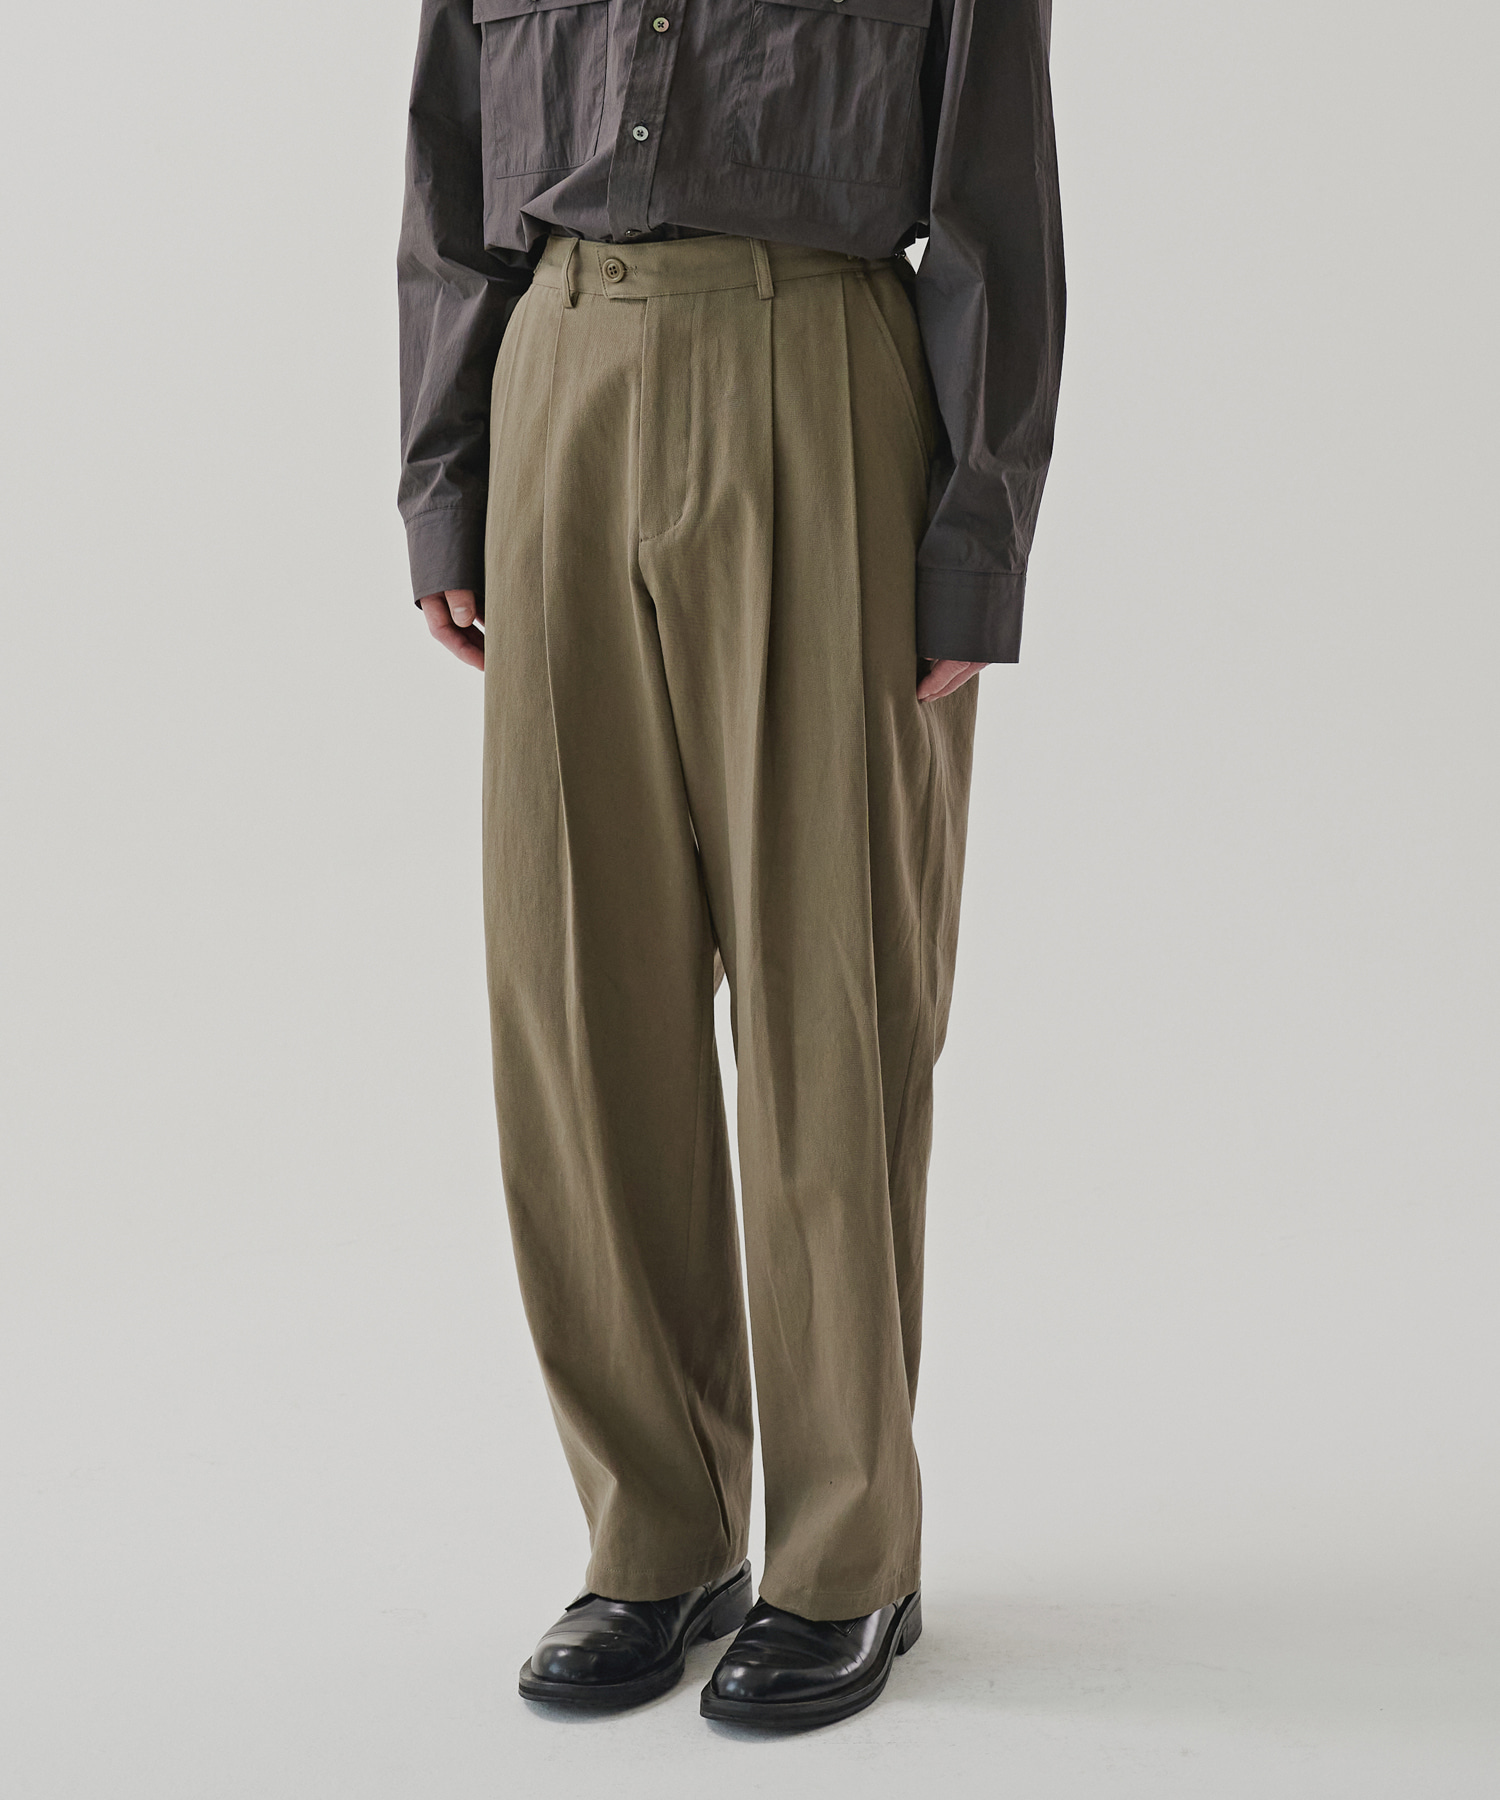 NOUN노운 wide chino pants (khaki)